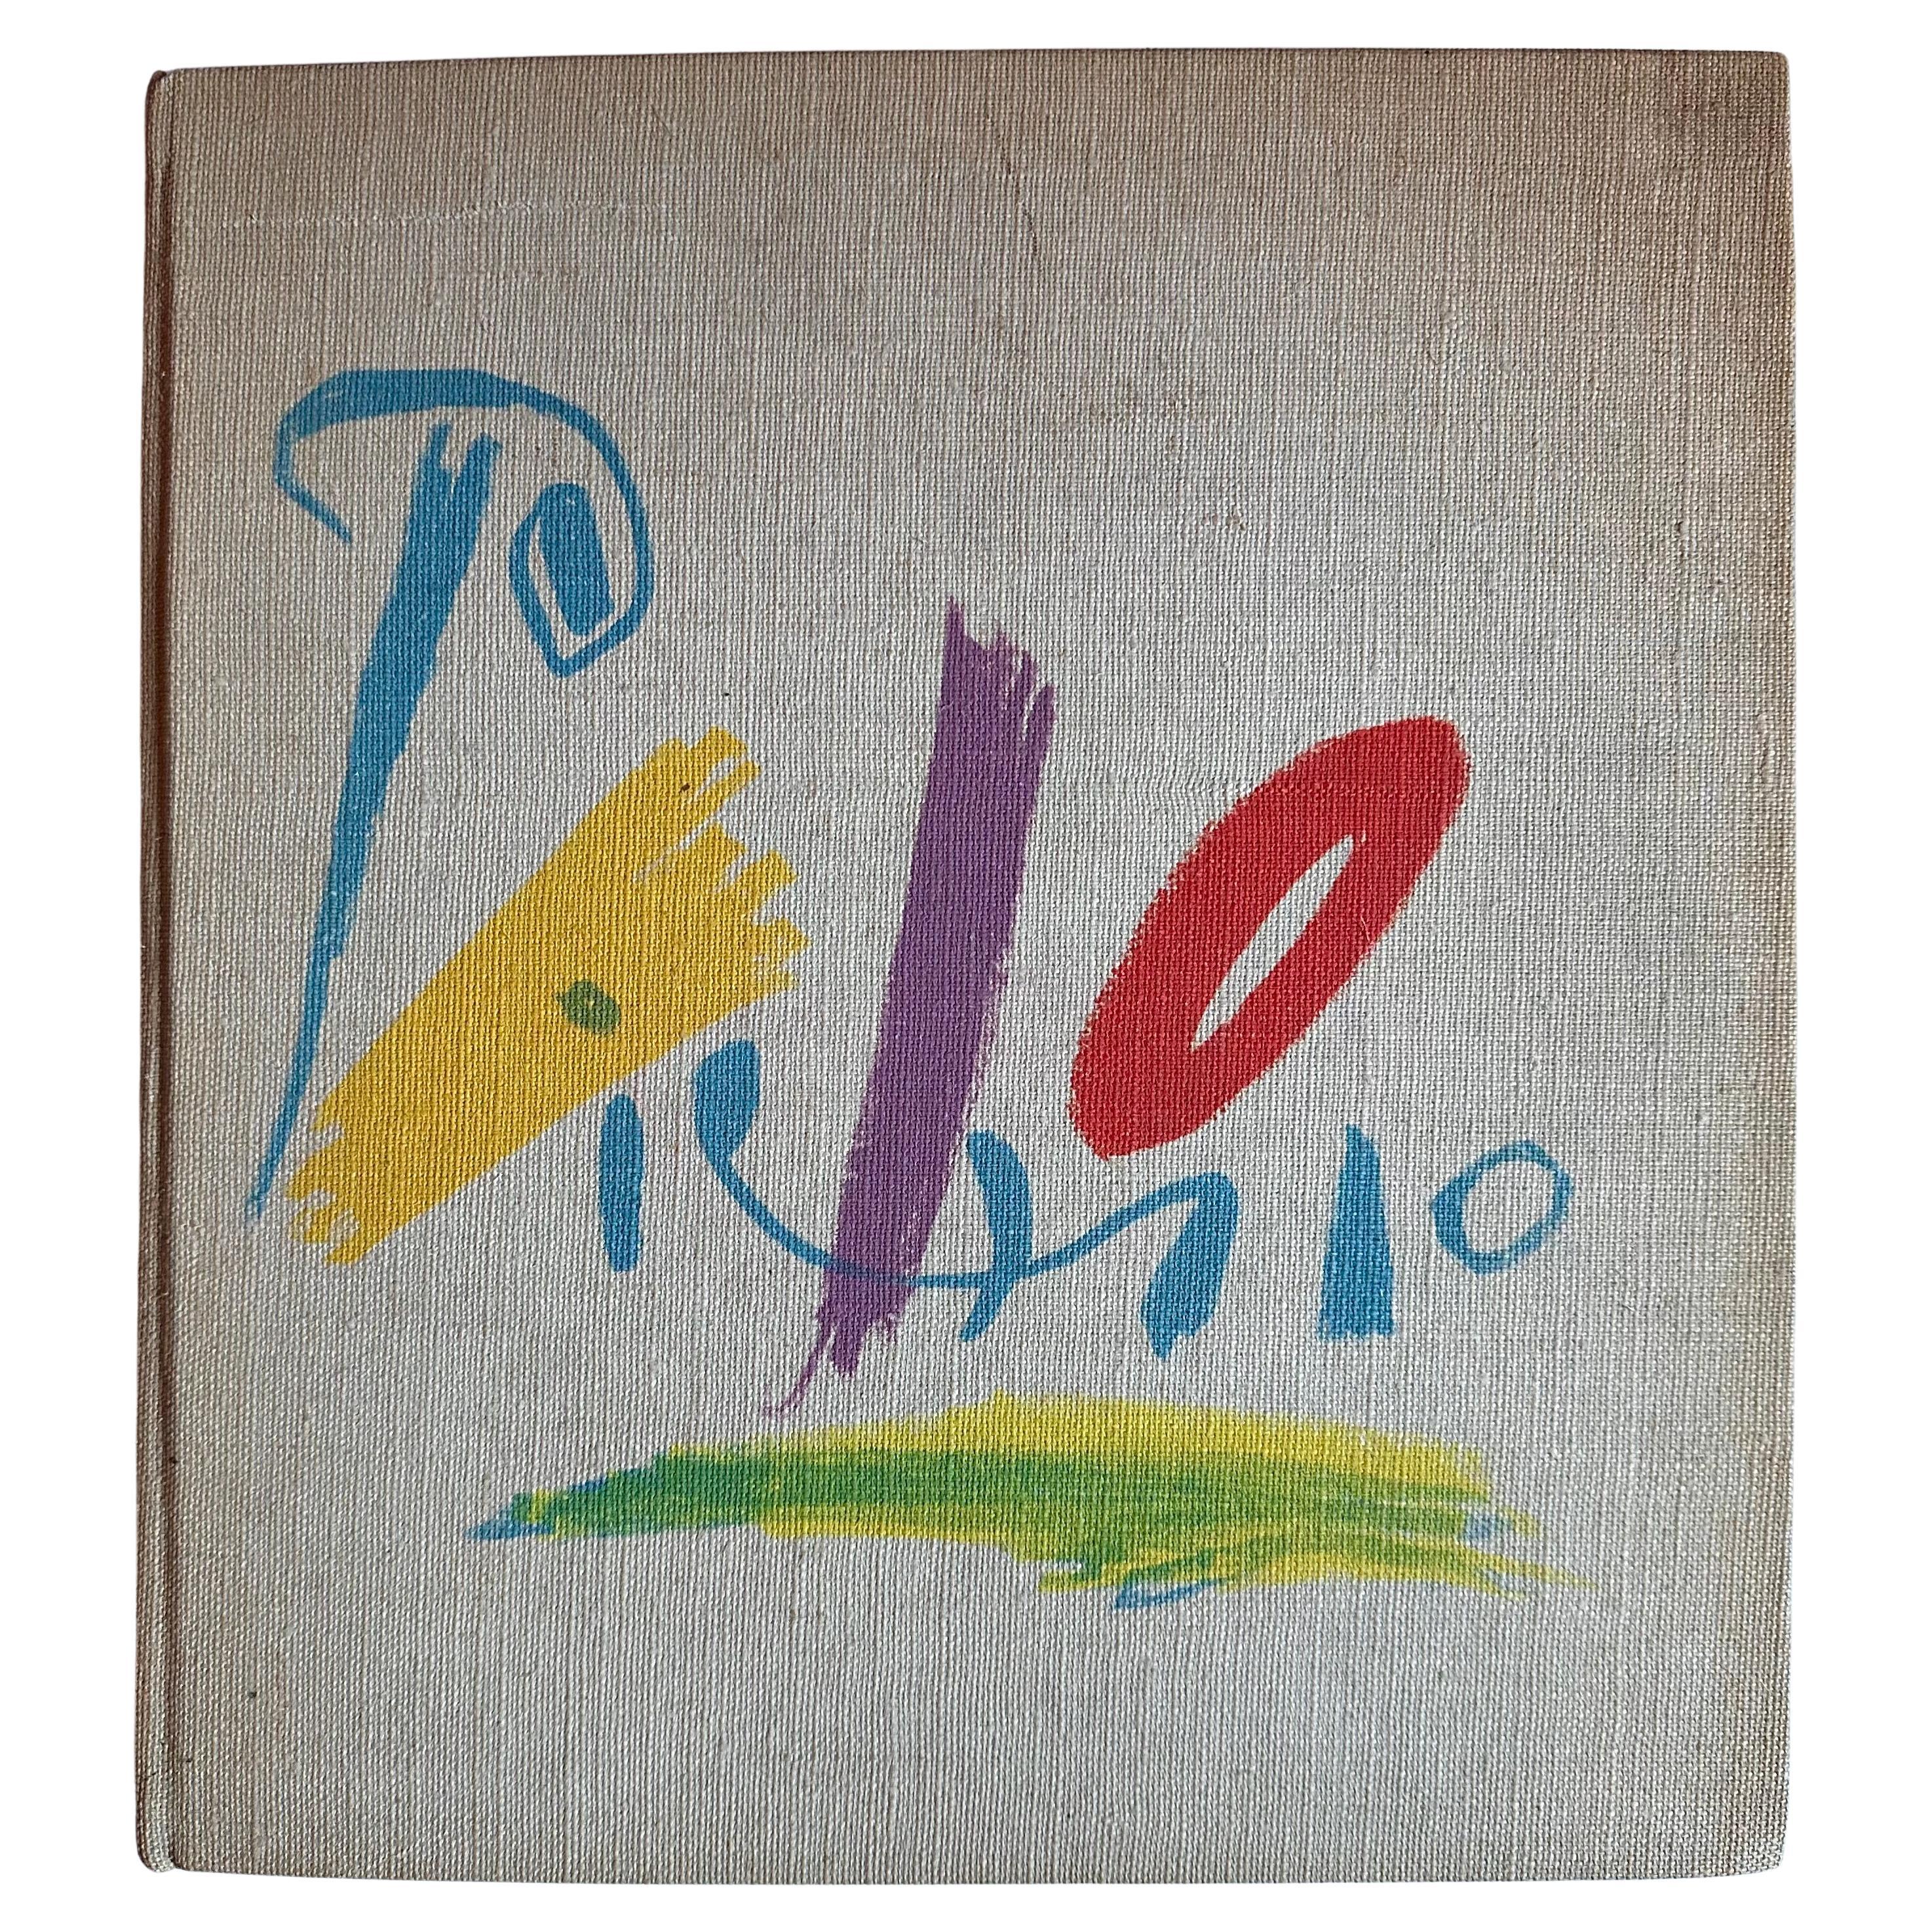 Picasso: Les Dames de Mougins. Secrets d'alcove d'un atelier, 1964